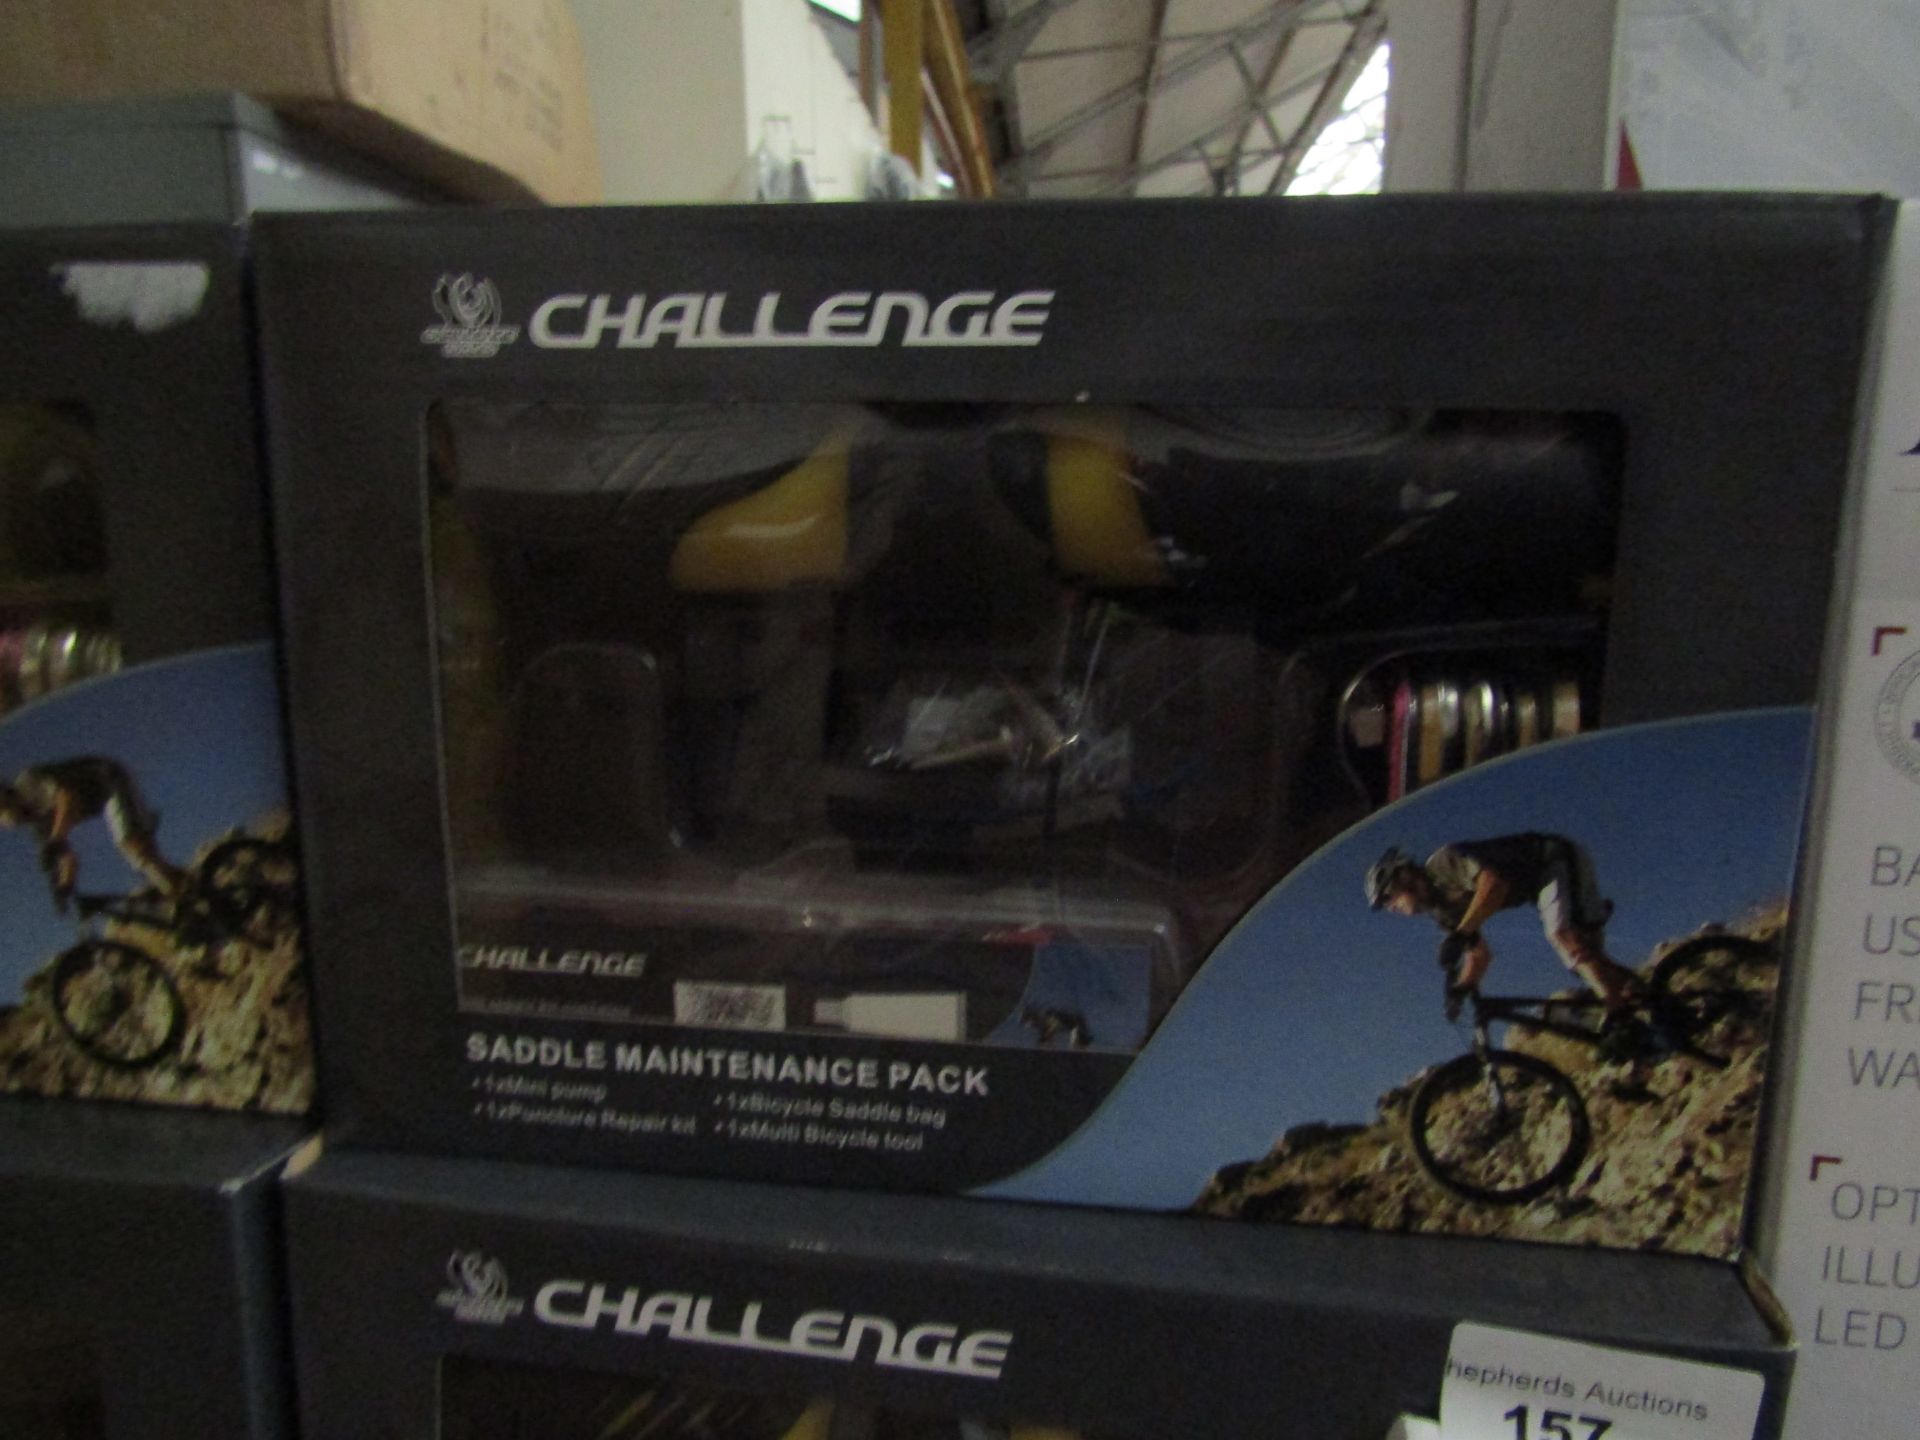 Challenge Bike Maintenance Pack. Incl Pump, Repair kit, Multitool & Bag. New & Boxed